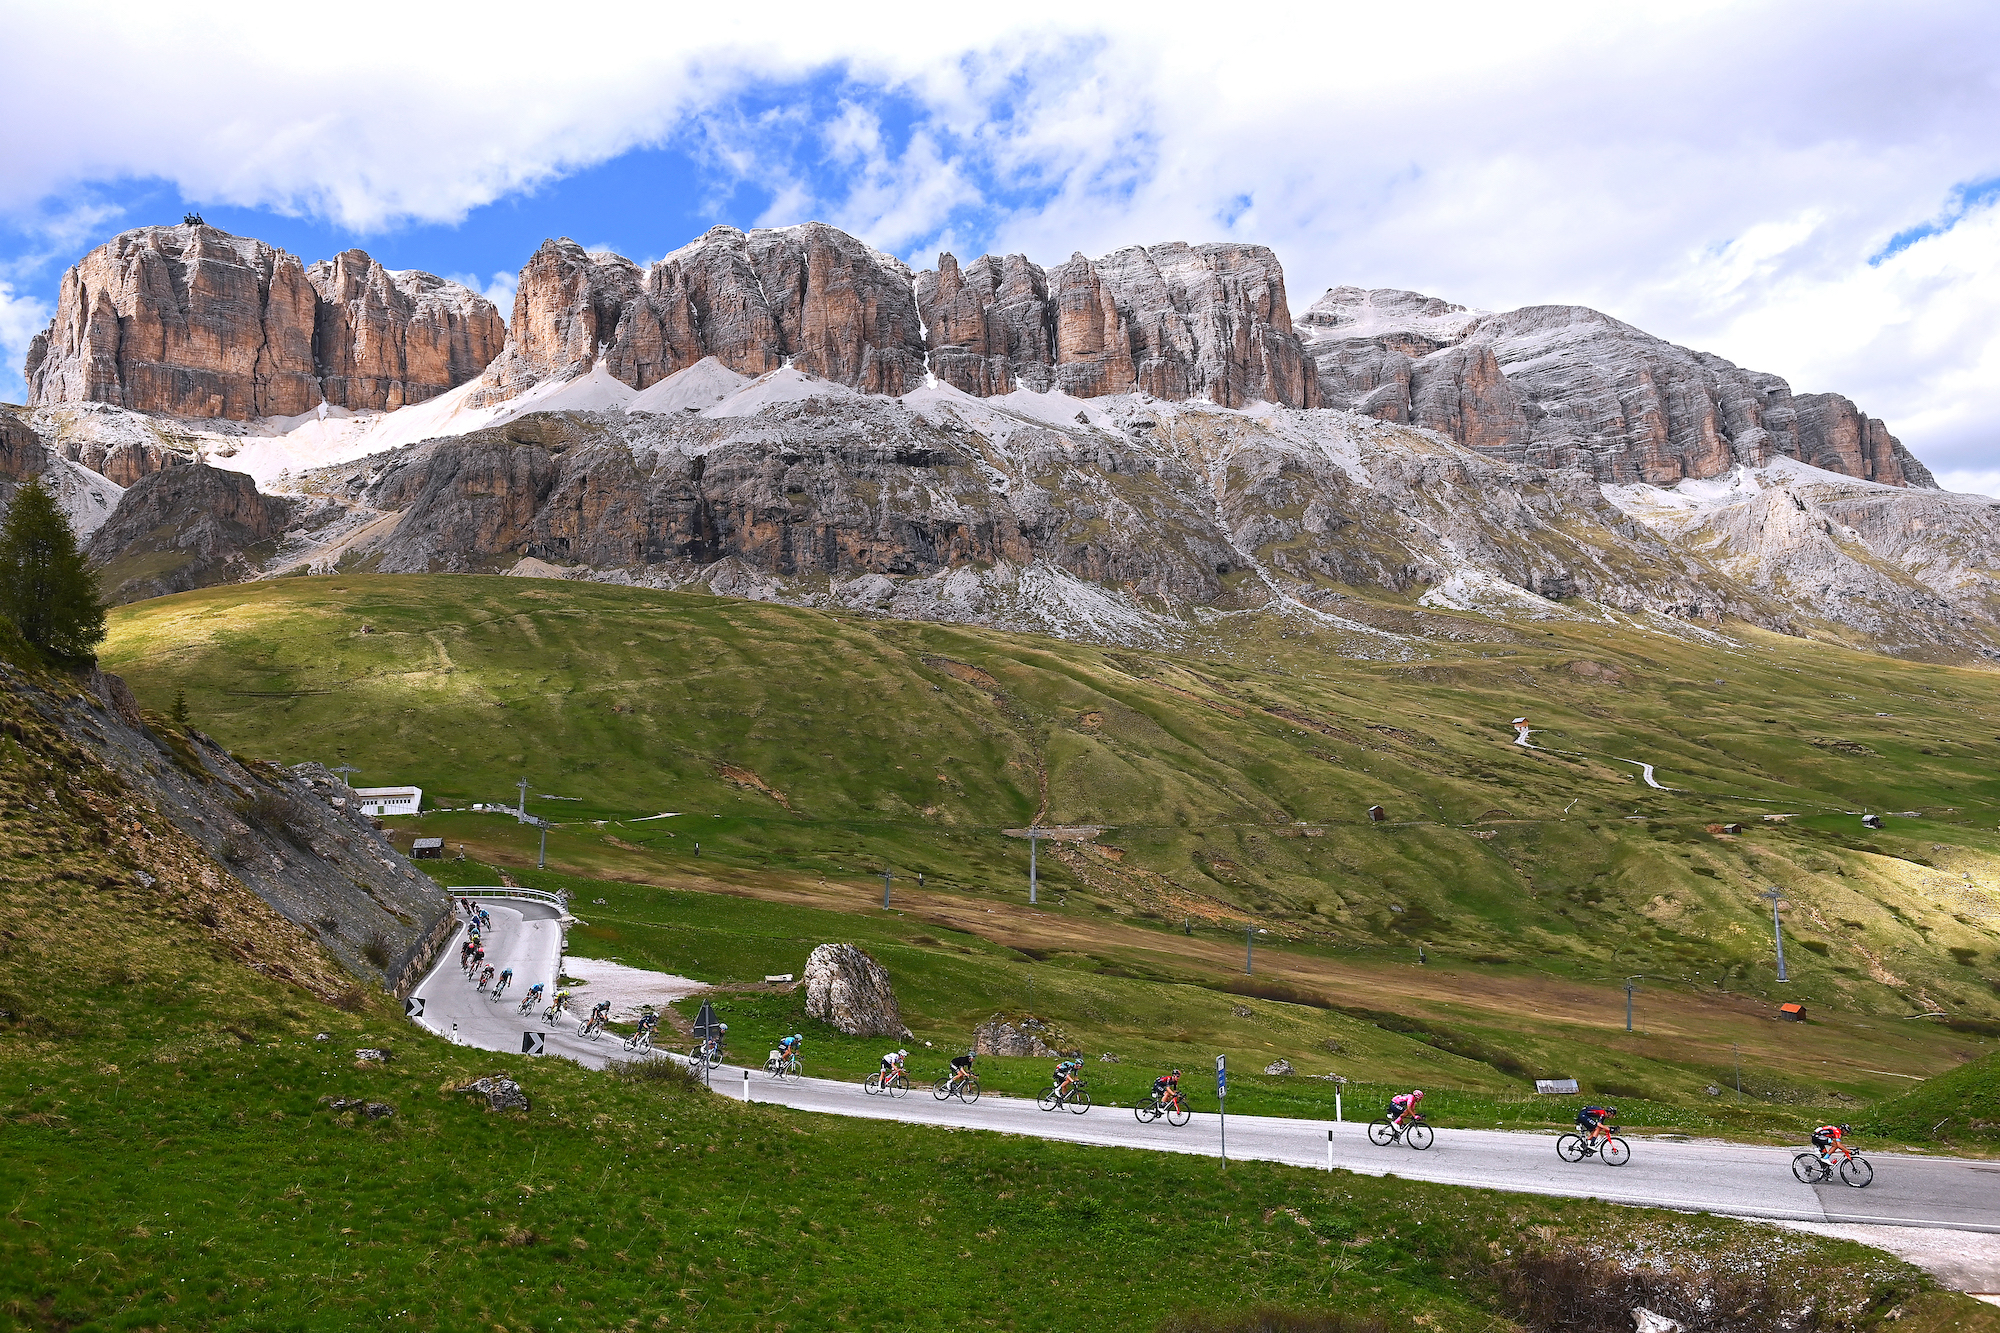 The peloton rides through the Dolomites on stage 20 of the Giro d'Italia 2022